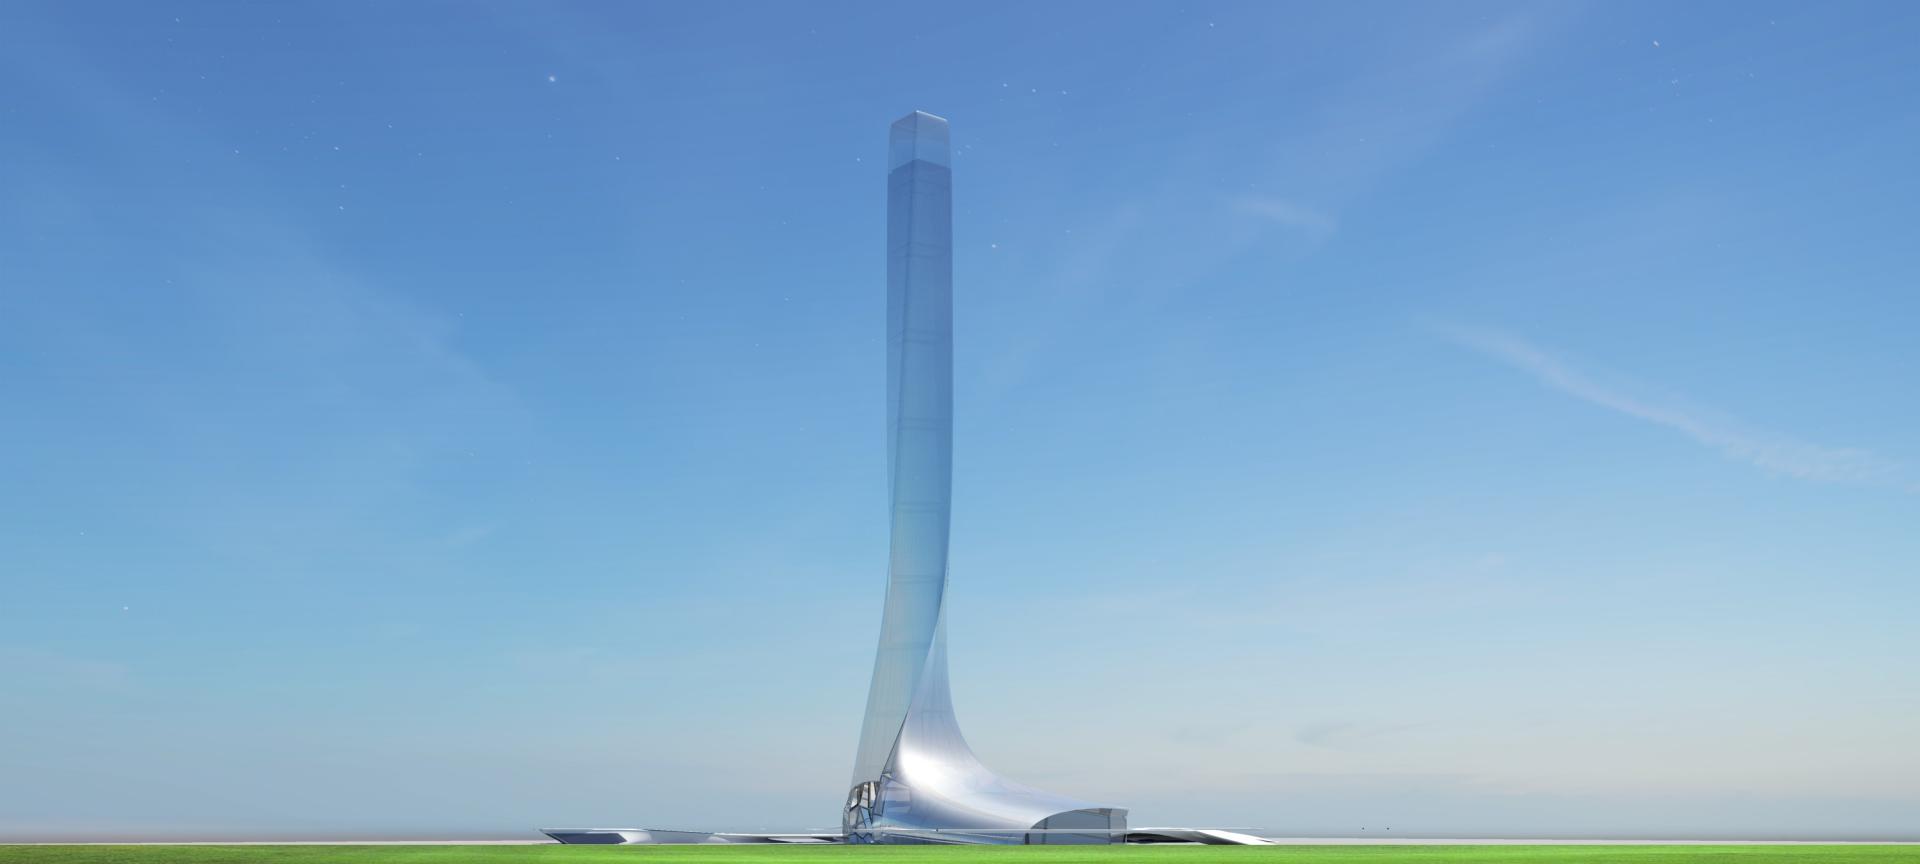 Современный взгляд на архитектуру будущего, выразившейся в проекте экспо центра и обсервационной башни в одном лице